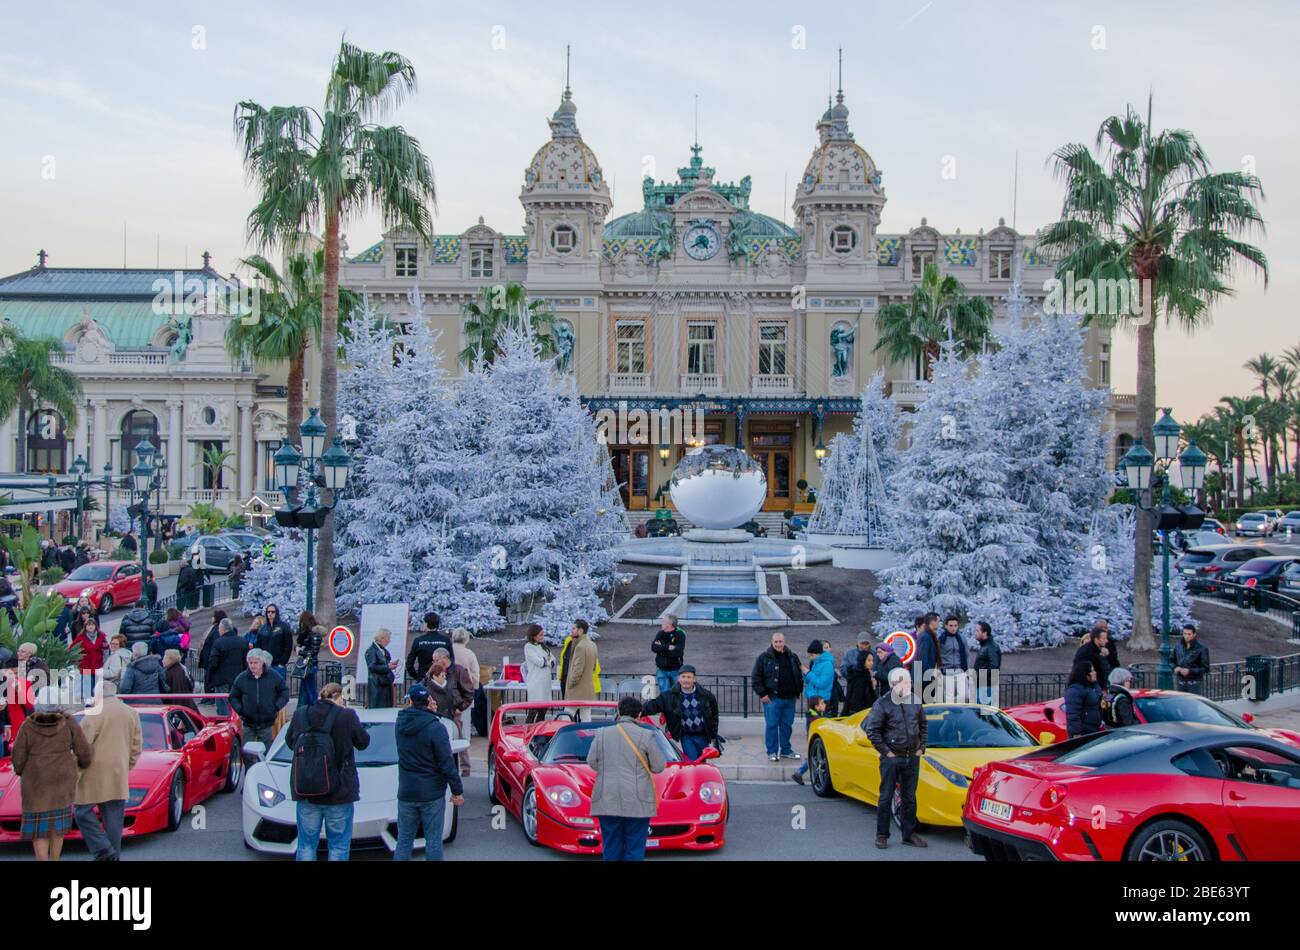 Monte Carlo Casino, Cafe de Paris & Hotel de Paris in Monte Carlo 2013. Stock Photo